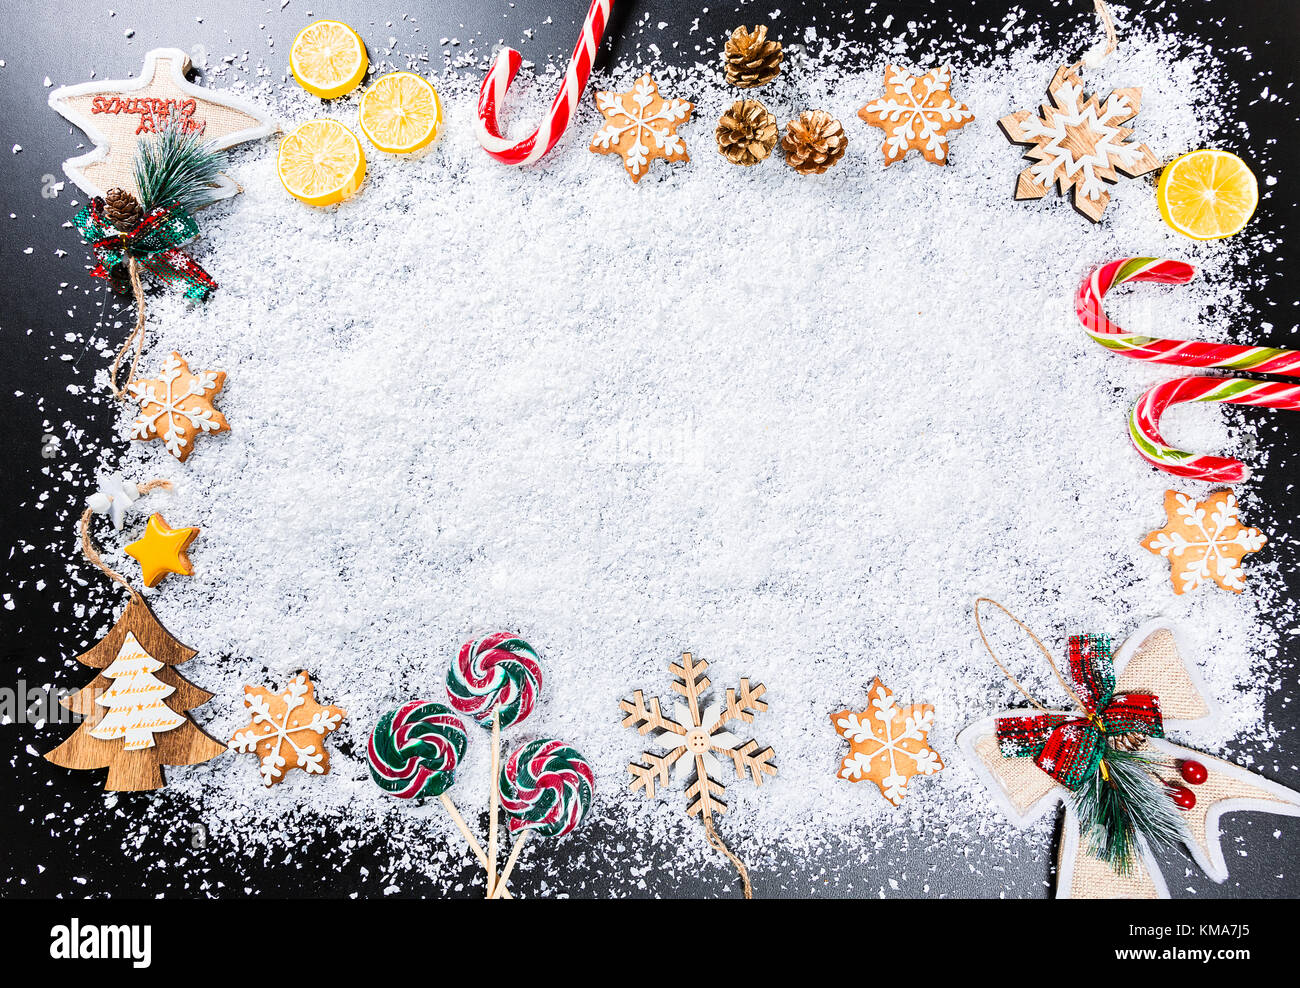 Fond de Noël avec des flocons de neige blanc, d'épices, des jouets, des bonbons au citron, et nouvel an vacances d'hiver. Décor cadre sur une table en bois noir Banque D'Images